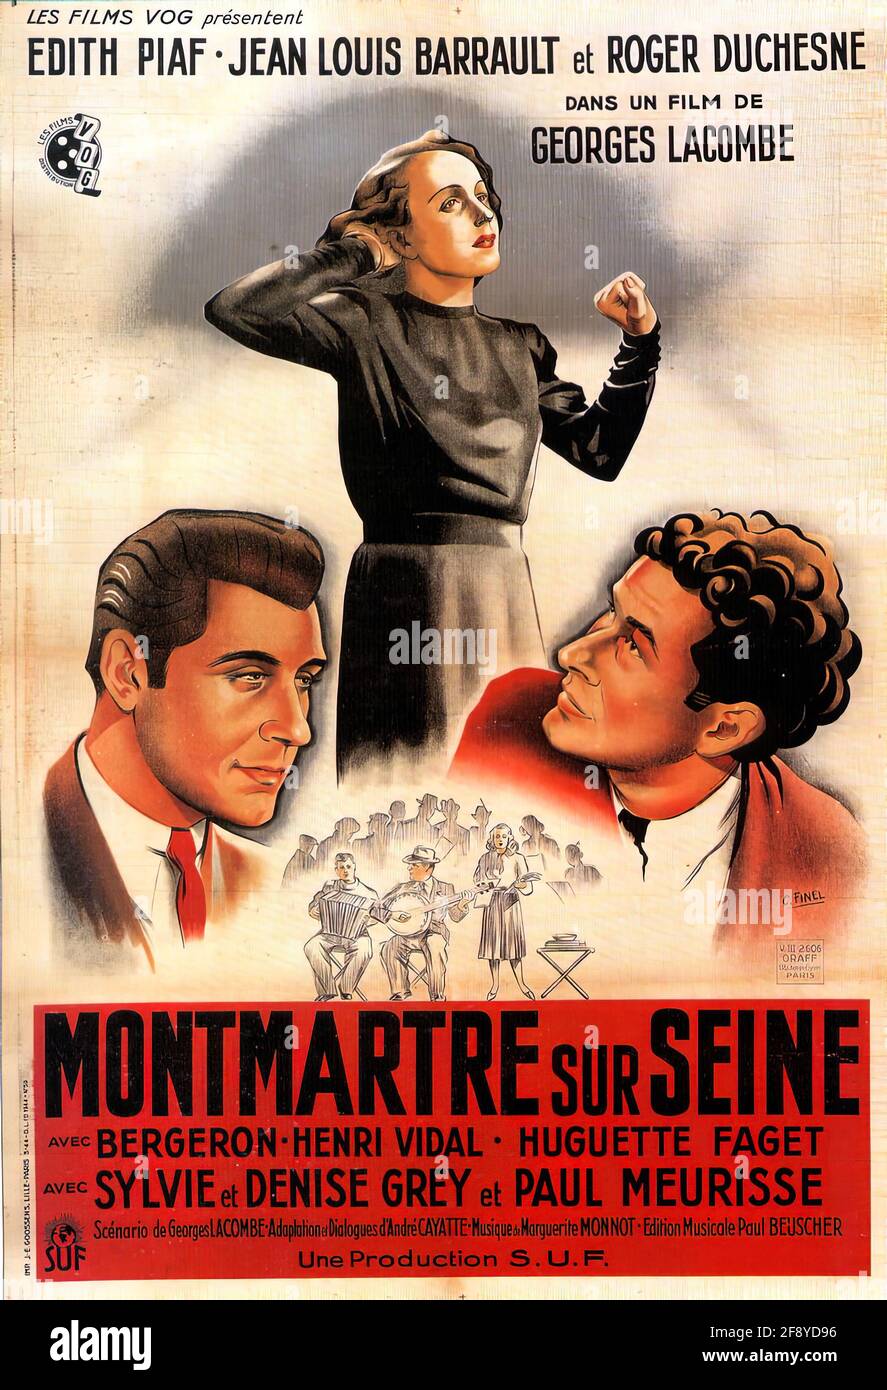 Ein Vintage-Filmplakat für Montmartre-sur-seine mit Edith Piaf Stockfoto